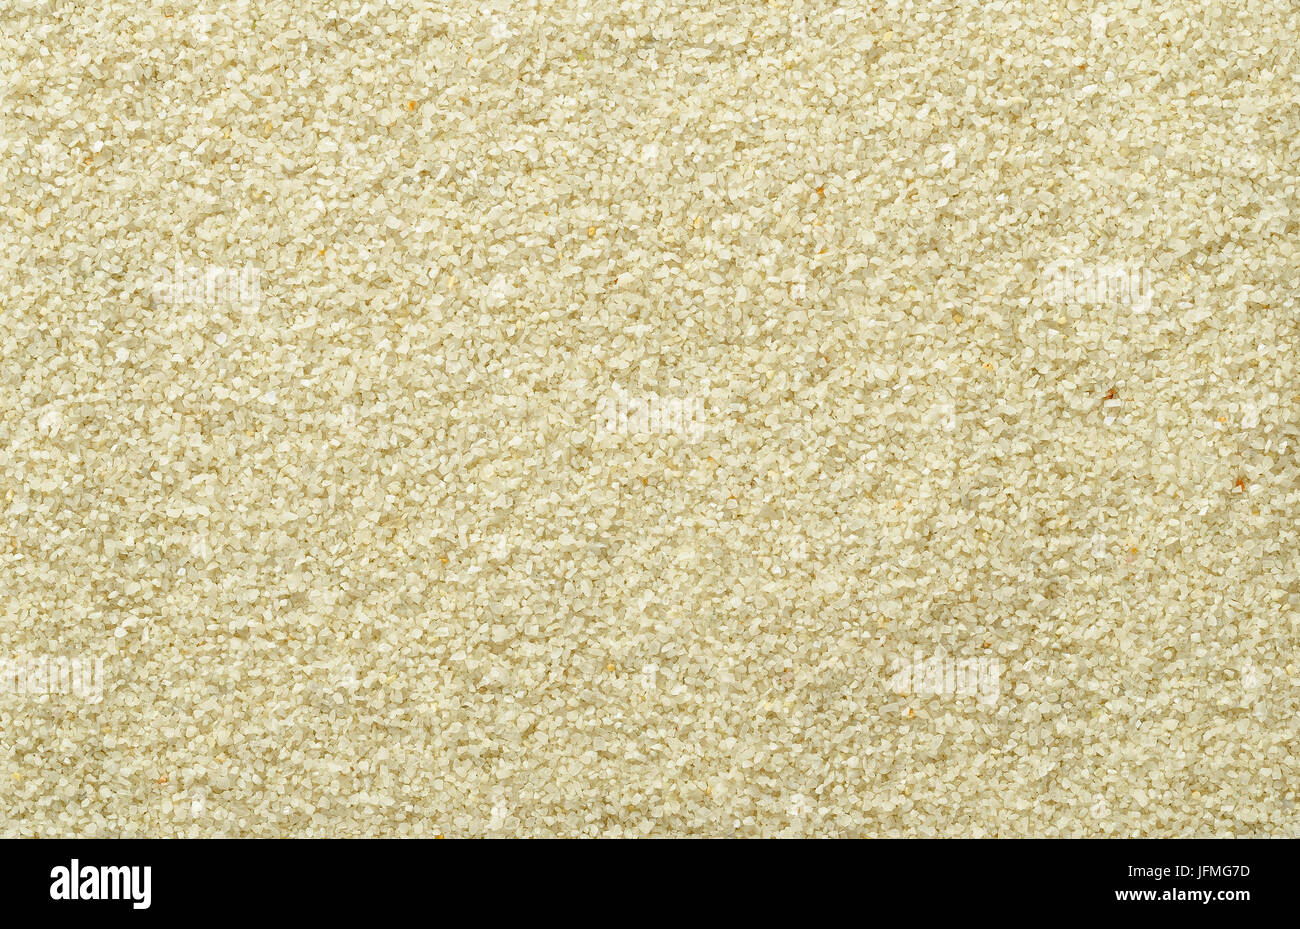 Oberfläche glatt und auch Sand. Hell braun und Ocker gefärbt Sandkörner. Hintergründe. Nahaufnahme Makro-Aufnahme direkt von oben. Stockfoto